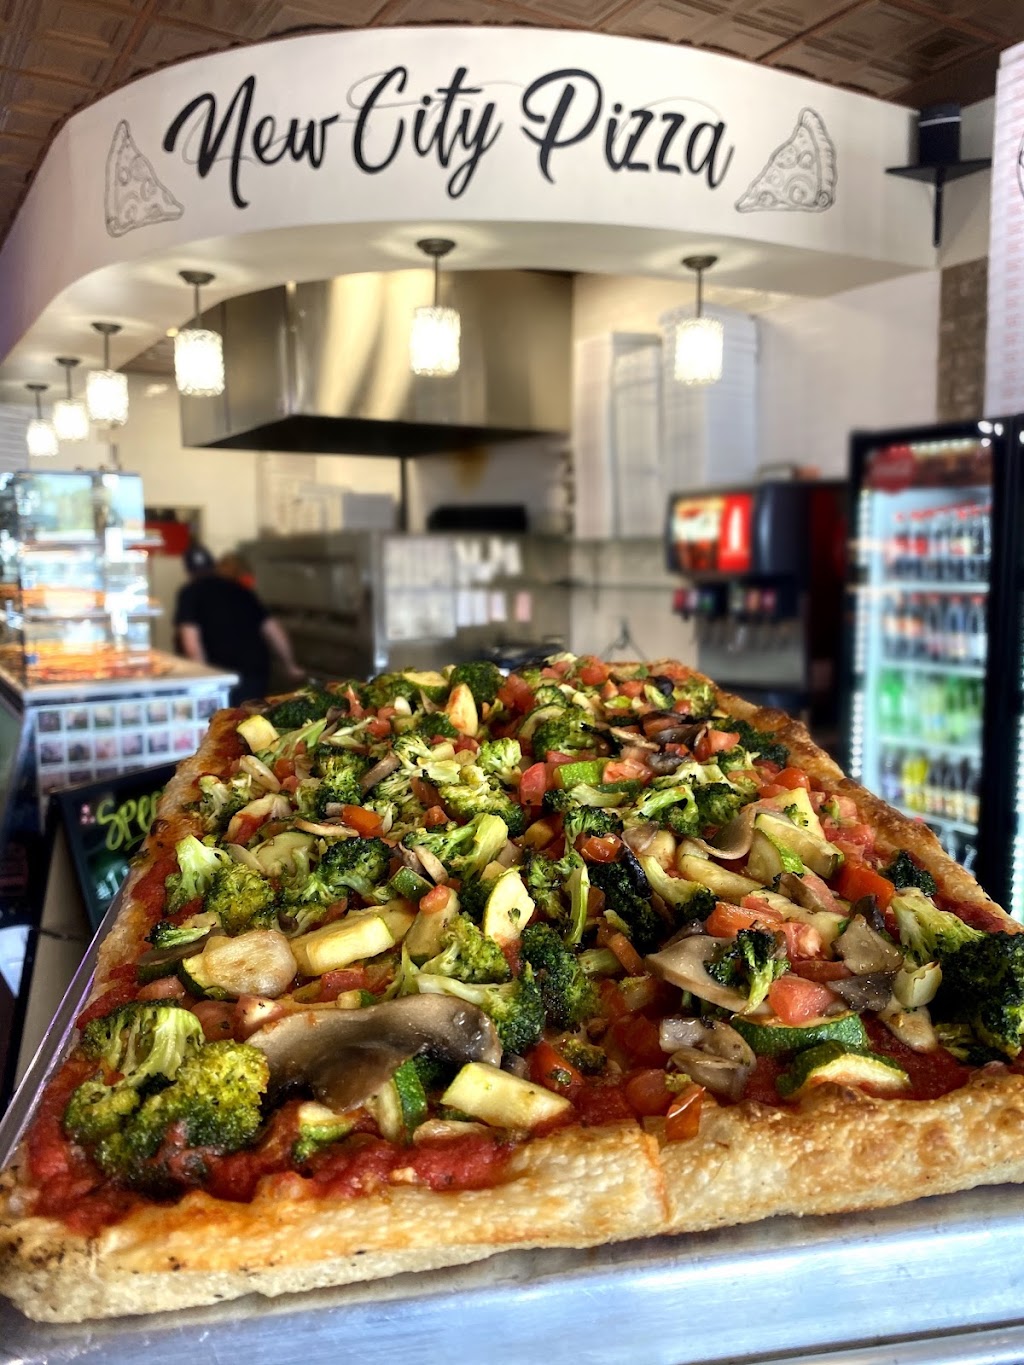 New City Pizza | 218 S Main St, New City, NY 10956 | Phone: (845) 634-2016